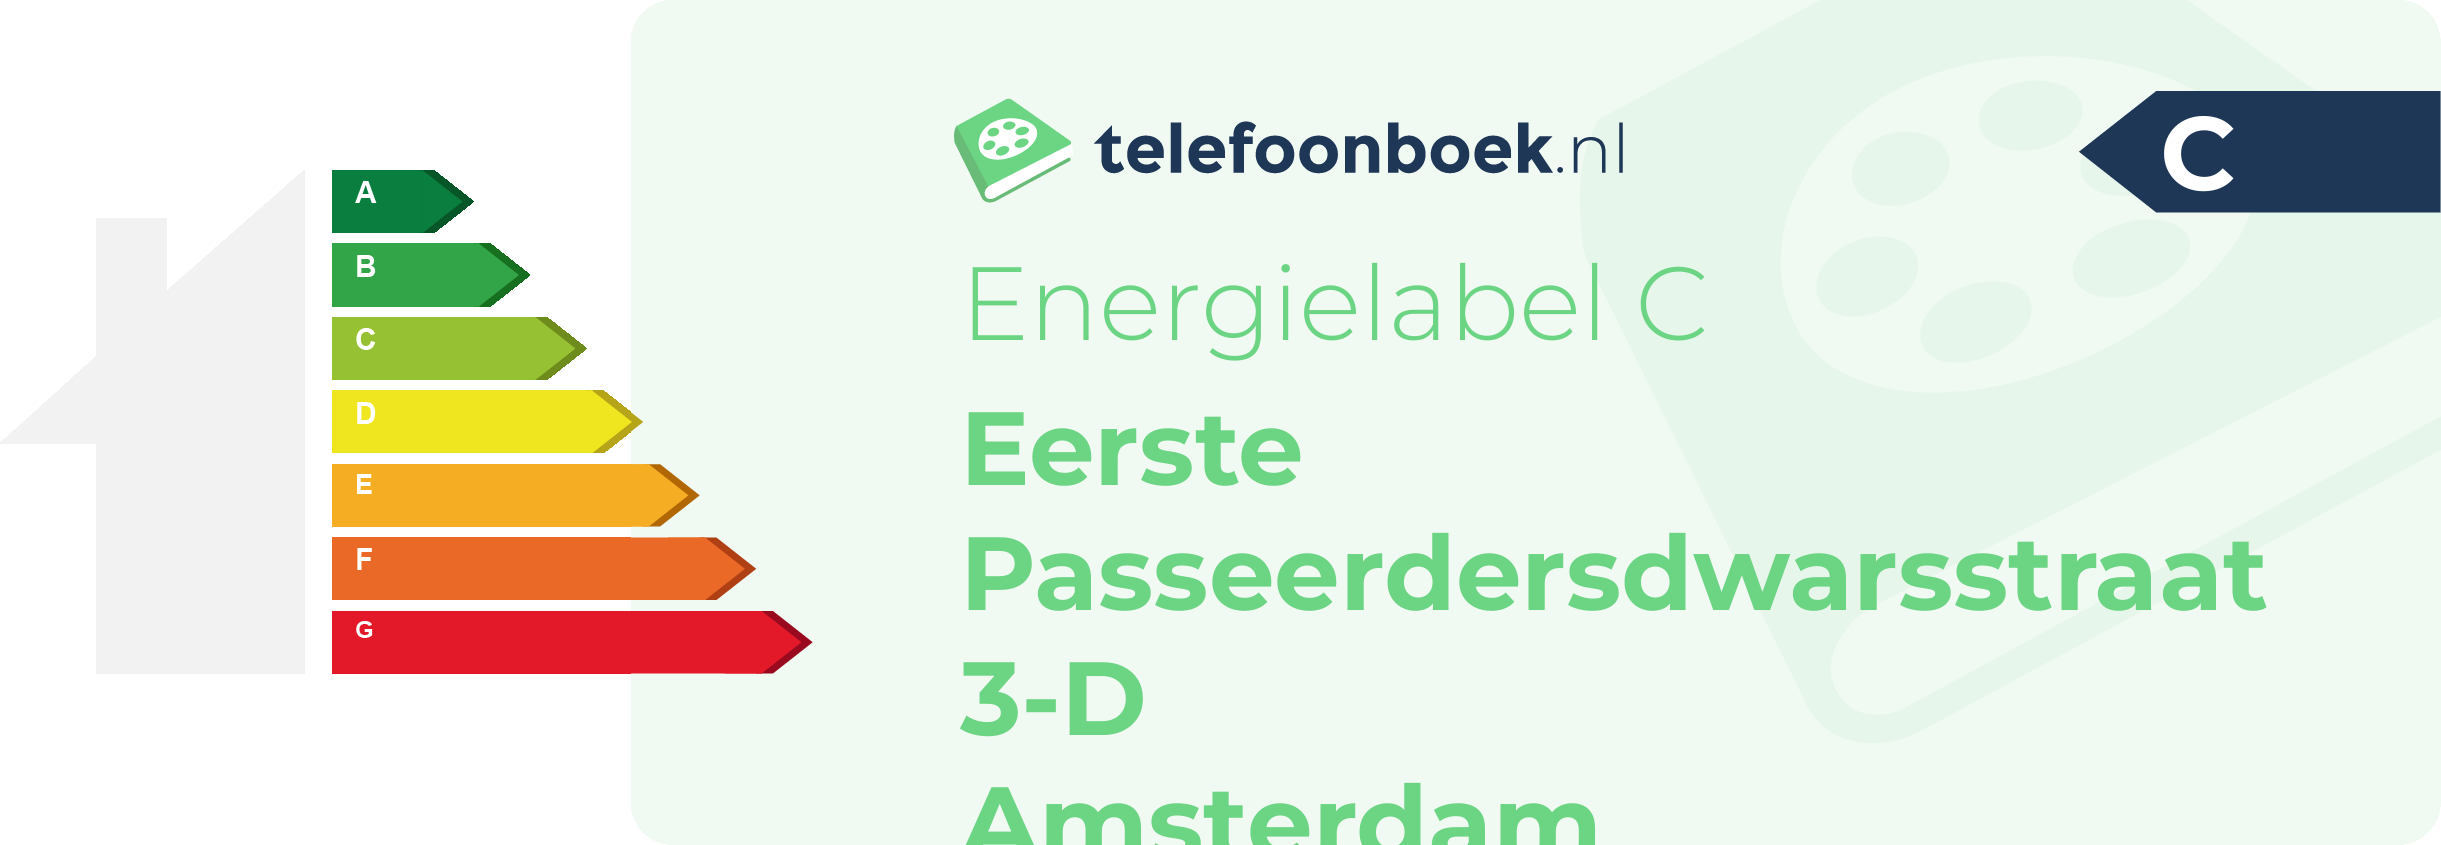 Energielabel Eerste Passeerdersdwarsstraat 3-D Amsterdam